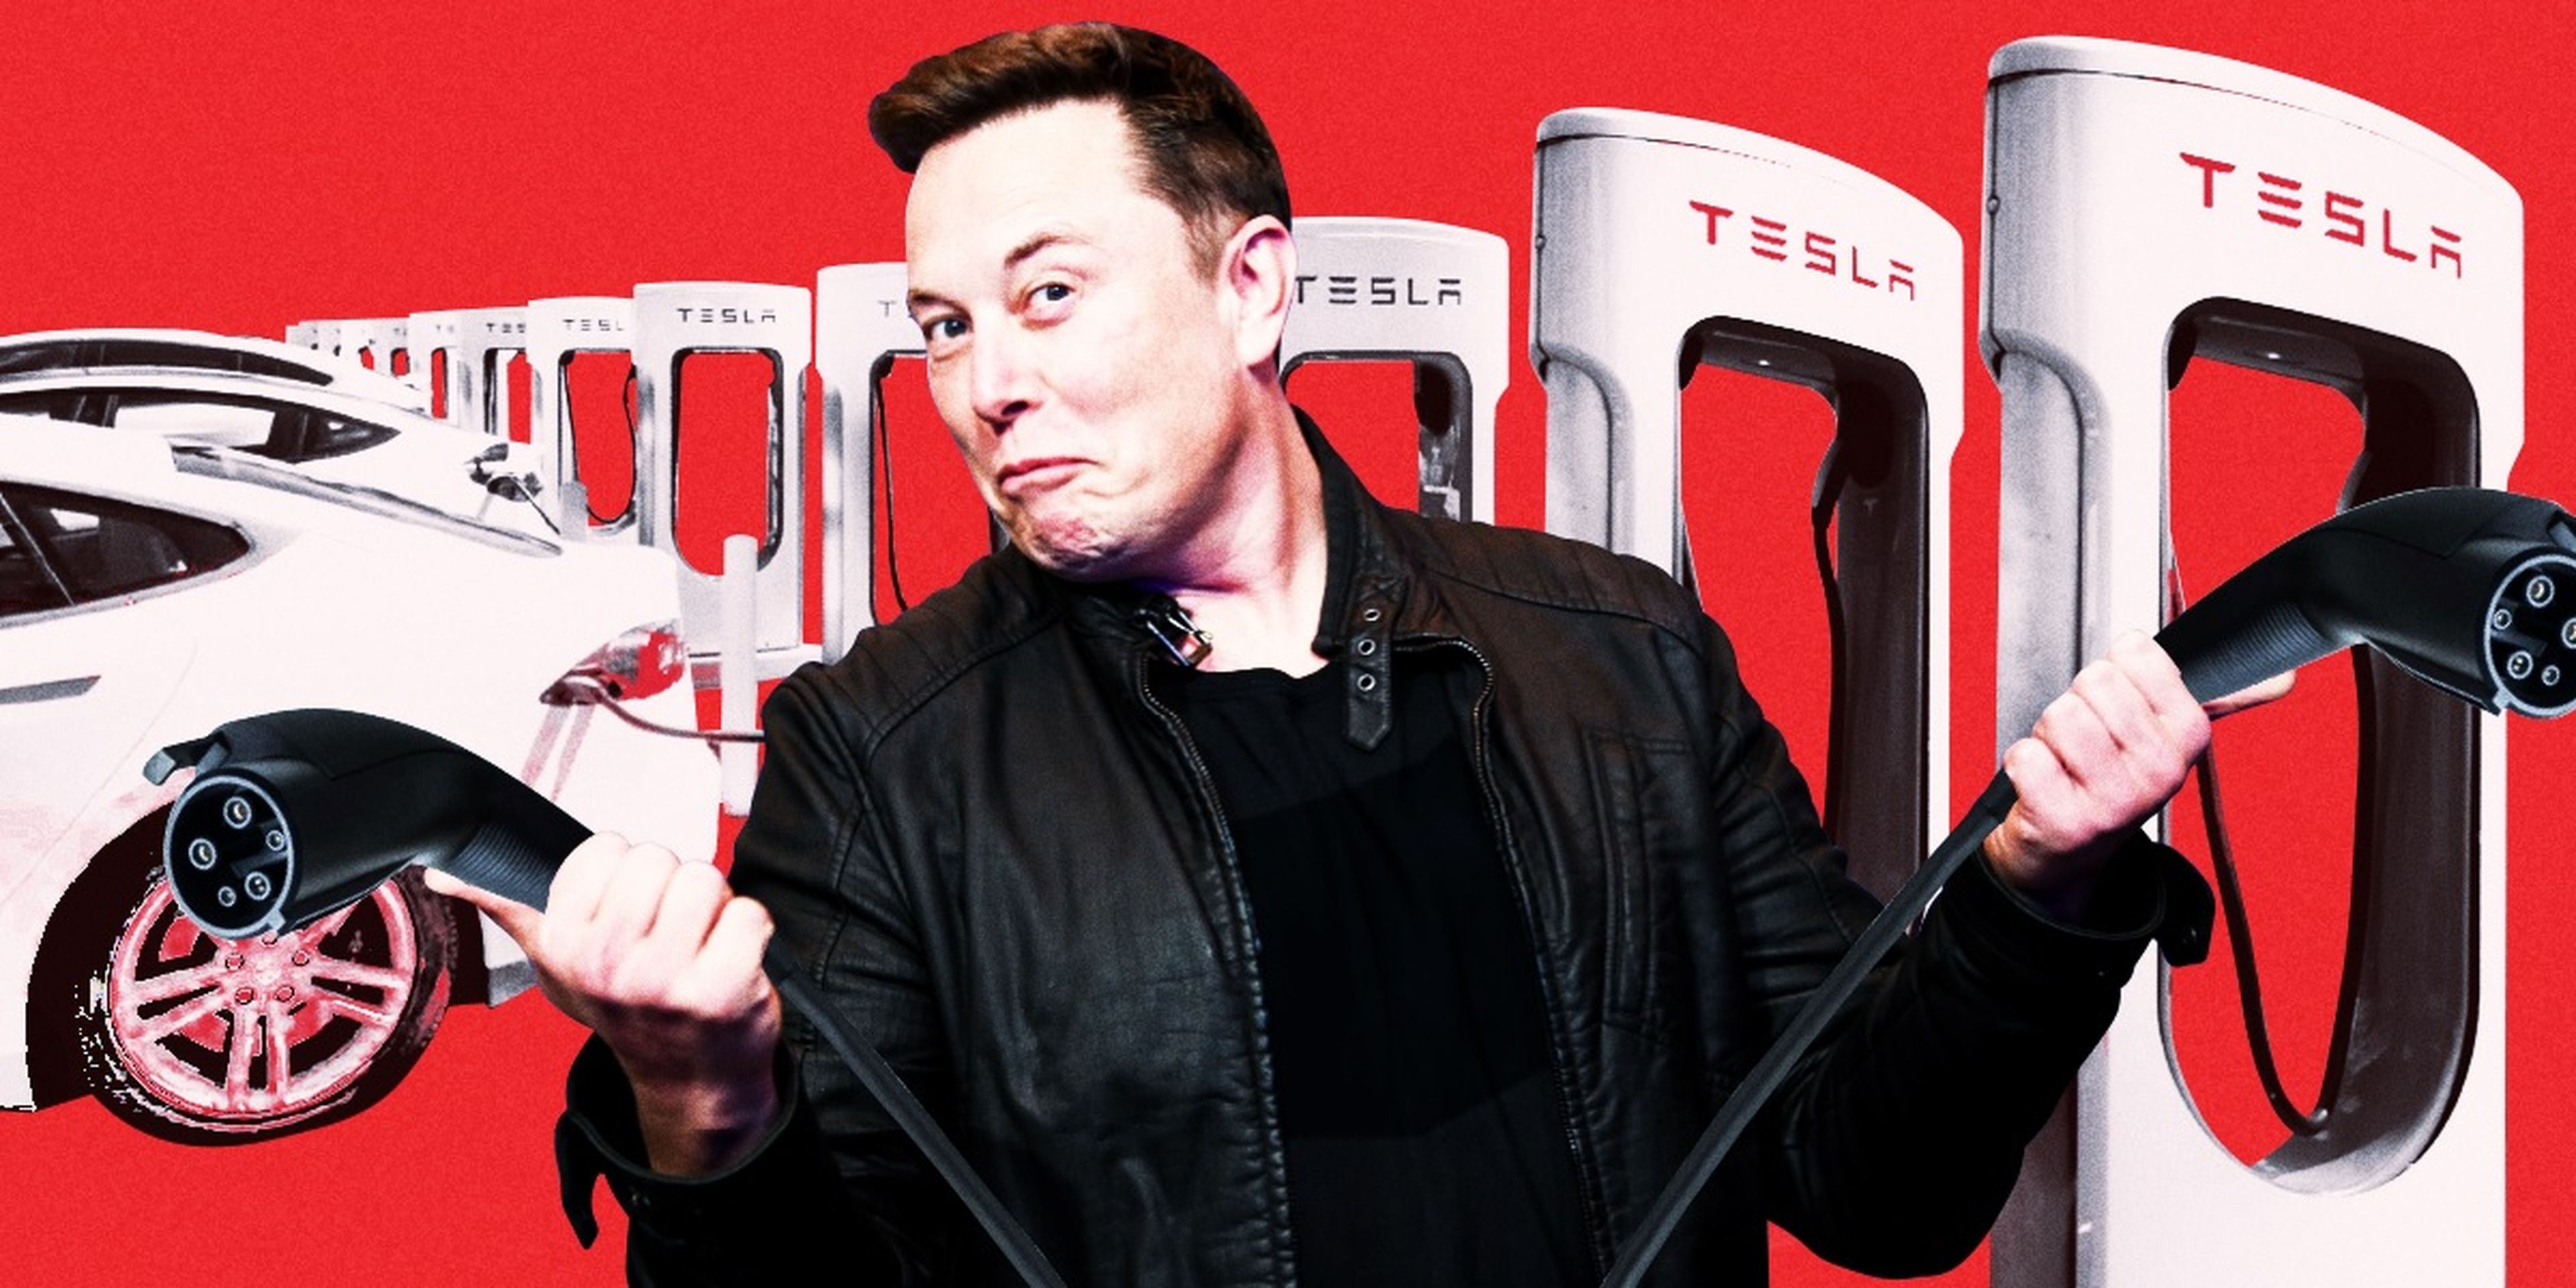 Tesla permite a las empresas rivales utilizar sus estaciones de recarga de vehículos eléctricos, lo que desvía discretamente datos de sus competidores.